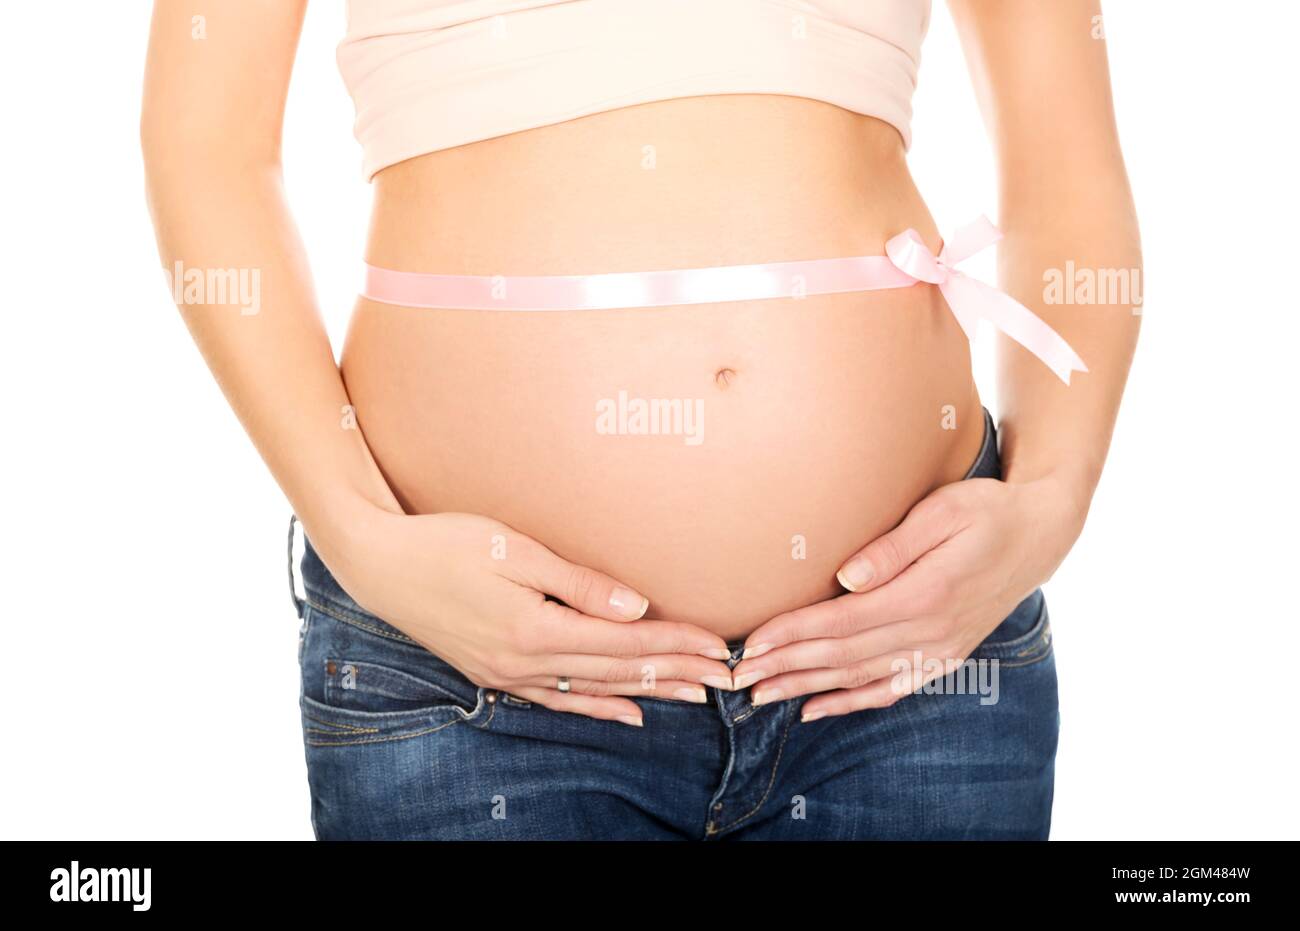 Gros plan du ventre d'une femme enceinte avec un noeud papillon Photo Stock  - Alamy